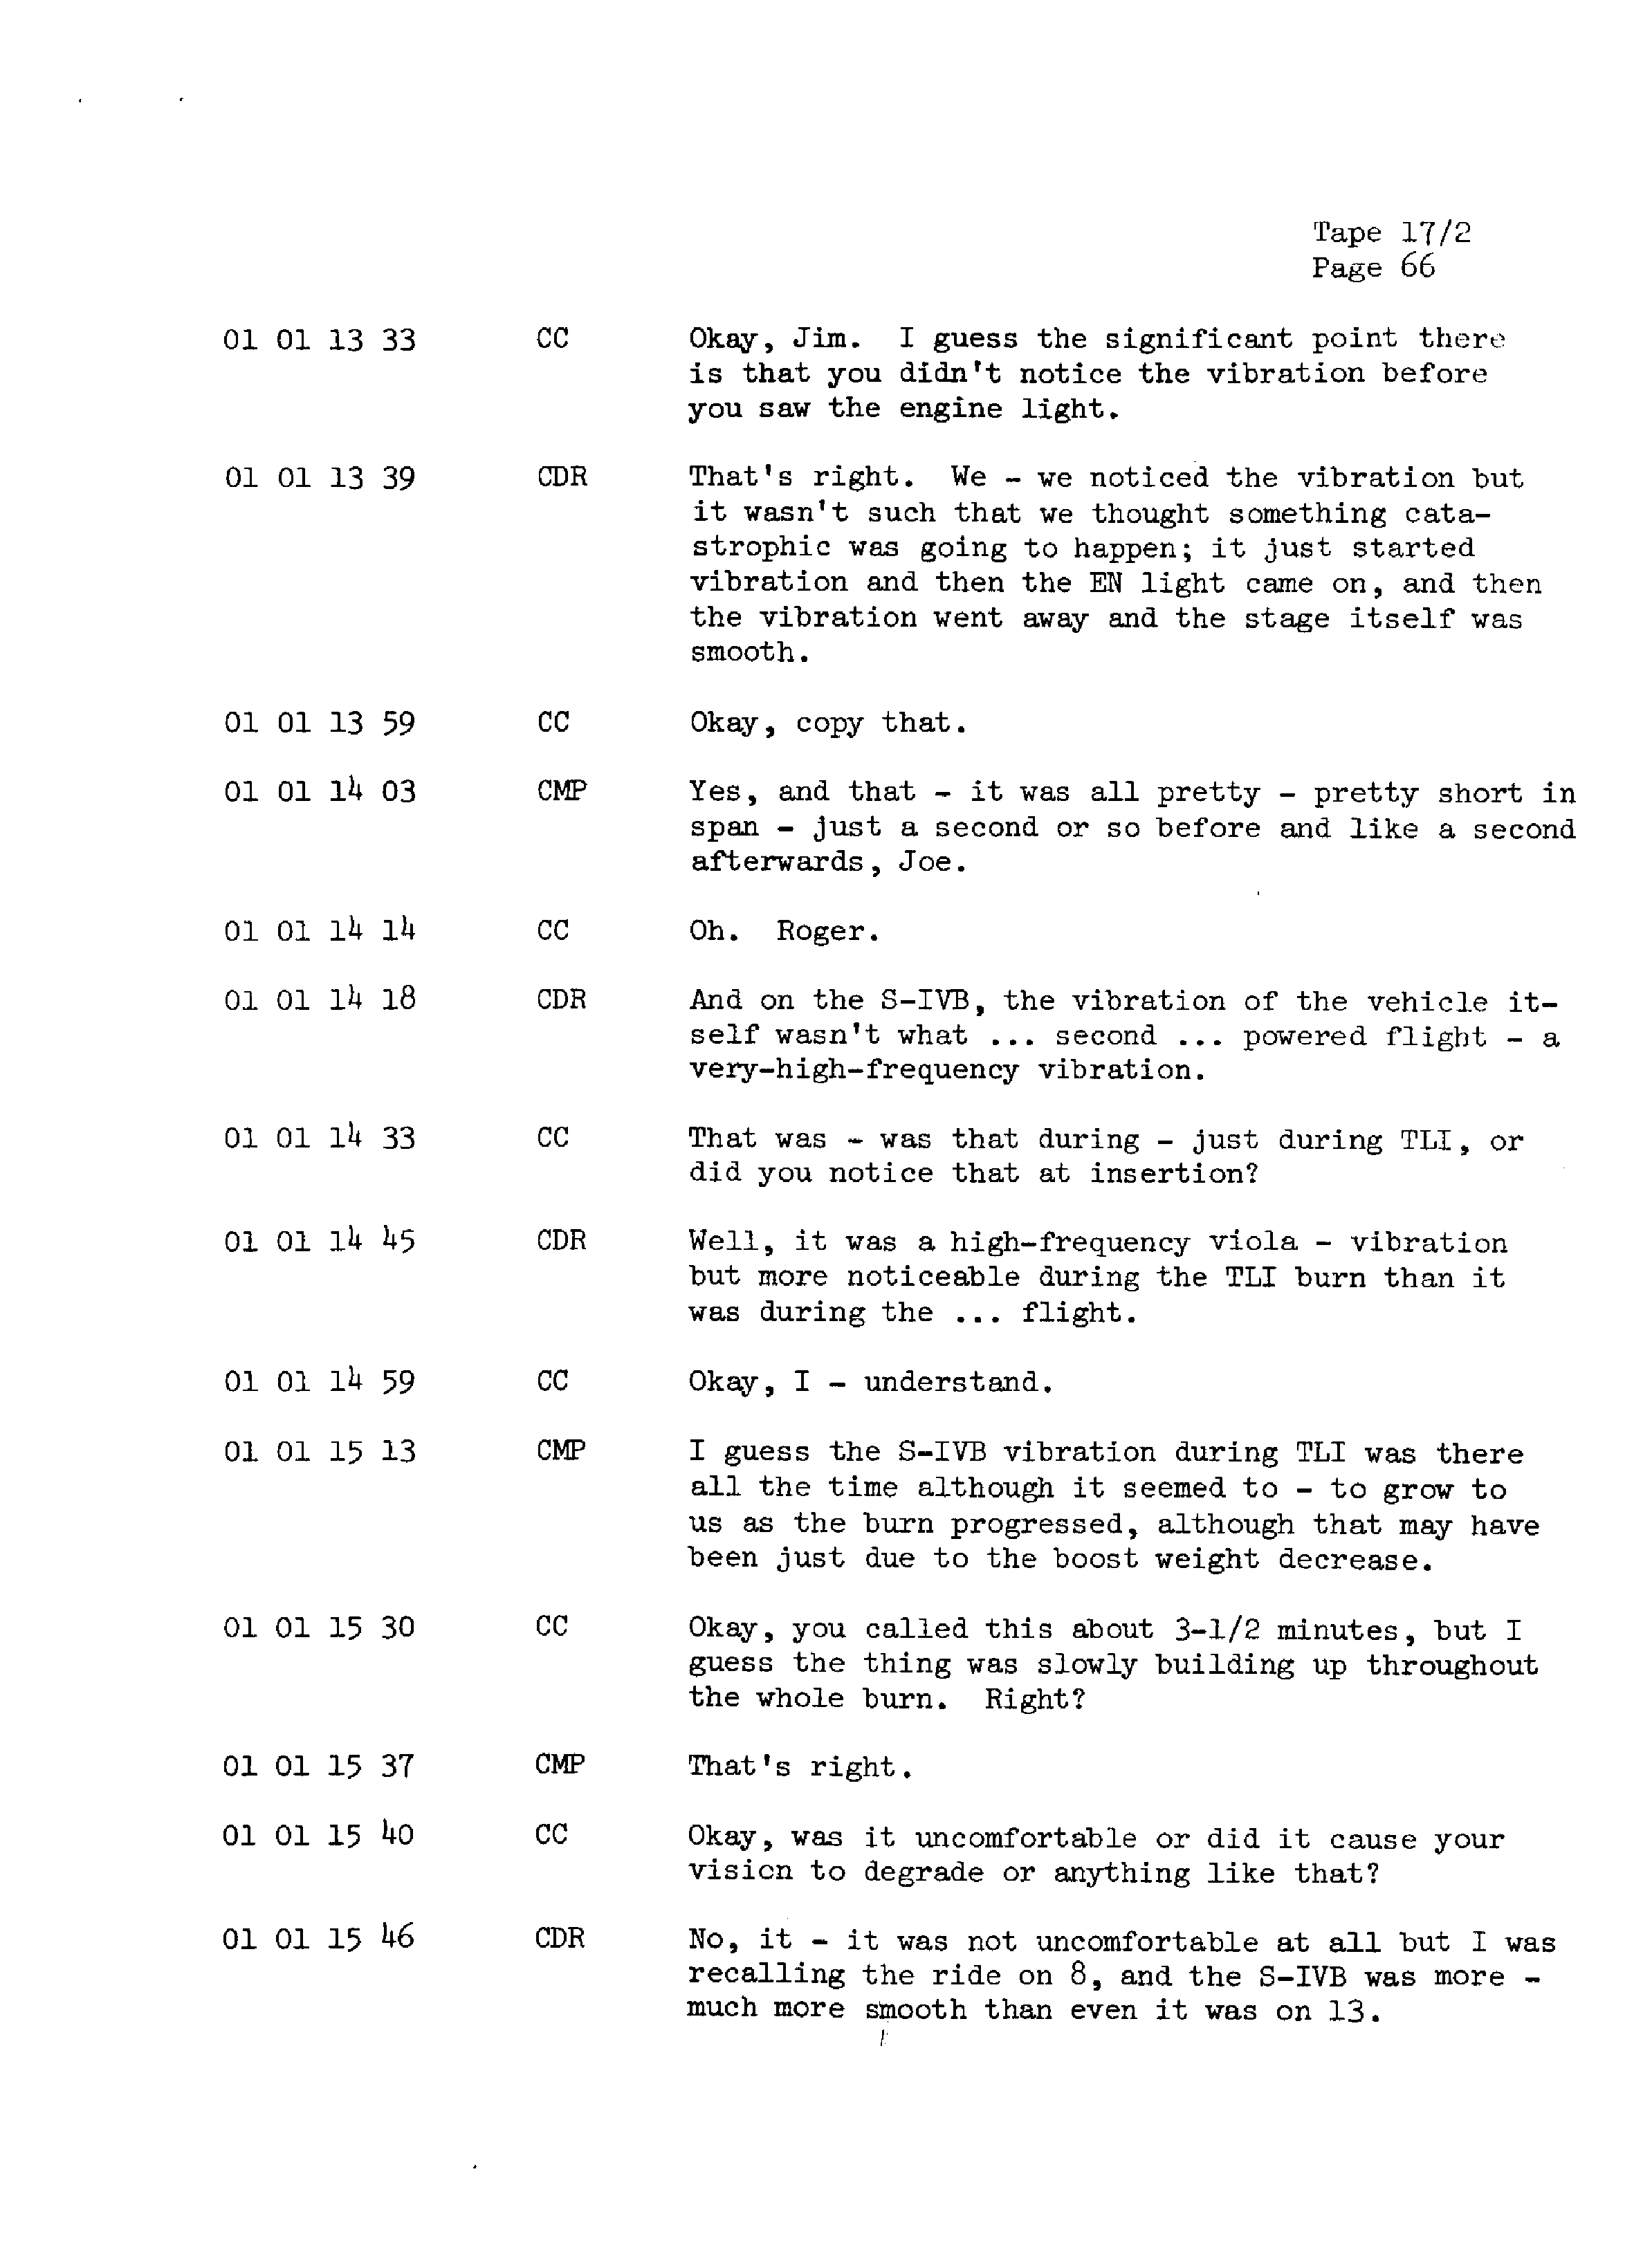 Page 73 of Apollo 13’s original transcript